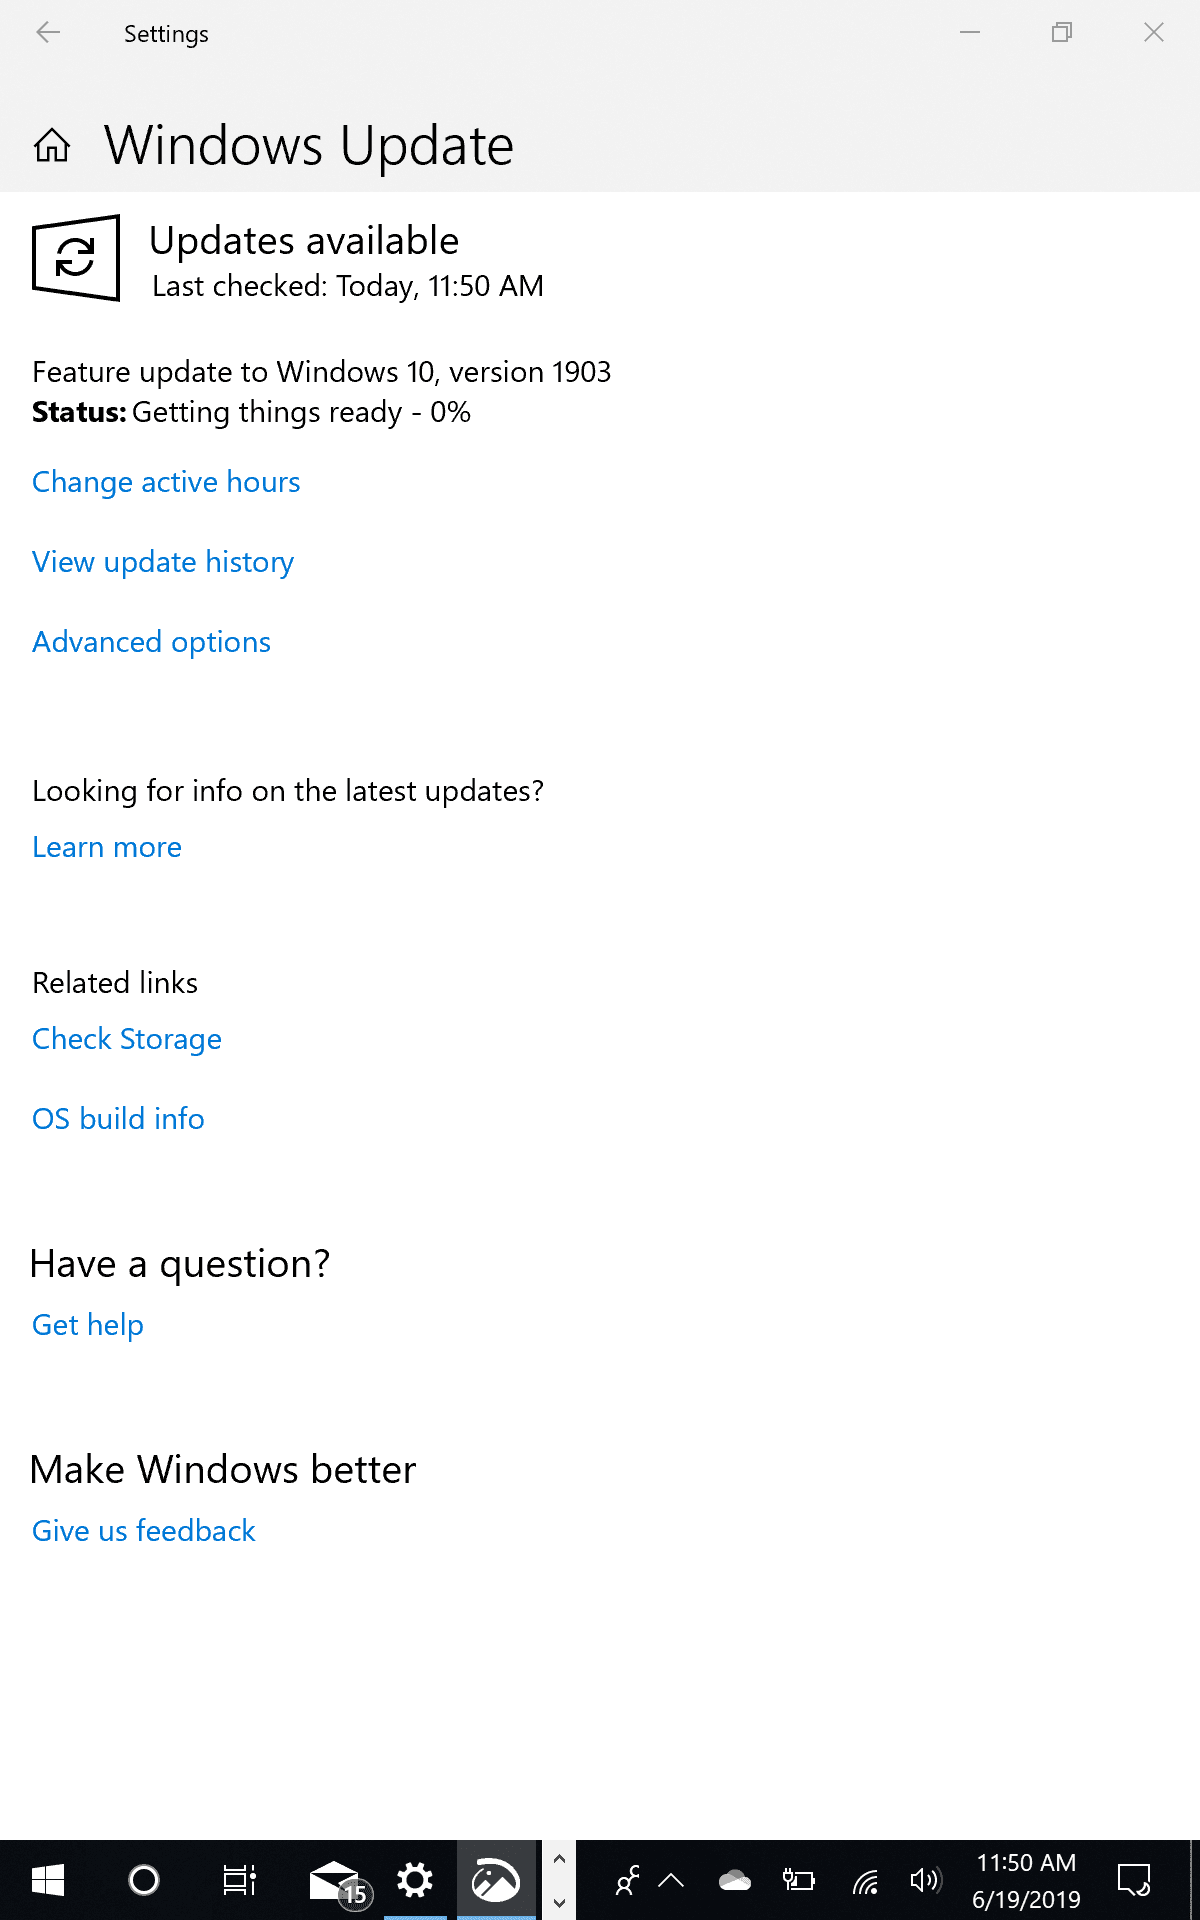 Windows Update Notice for Windows 10 Version 1903